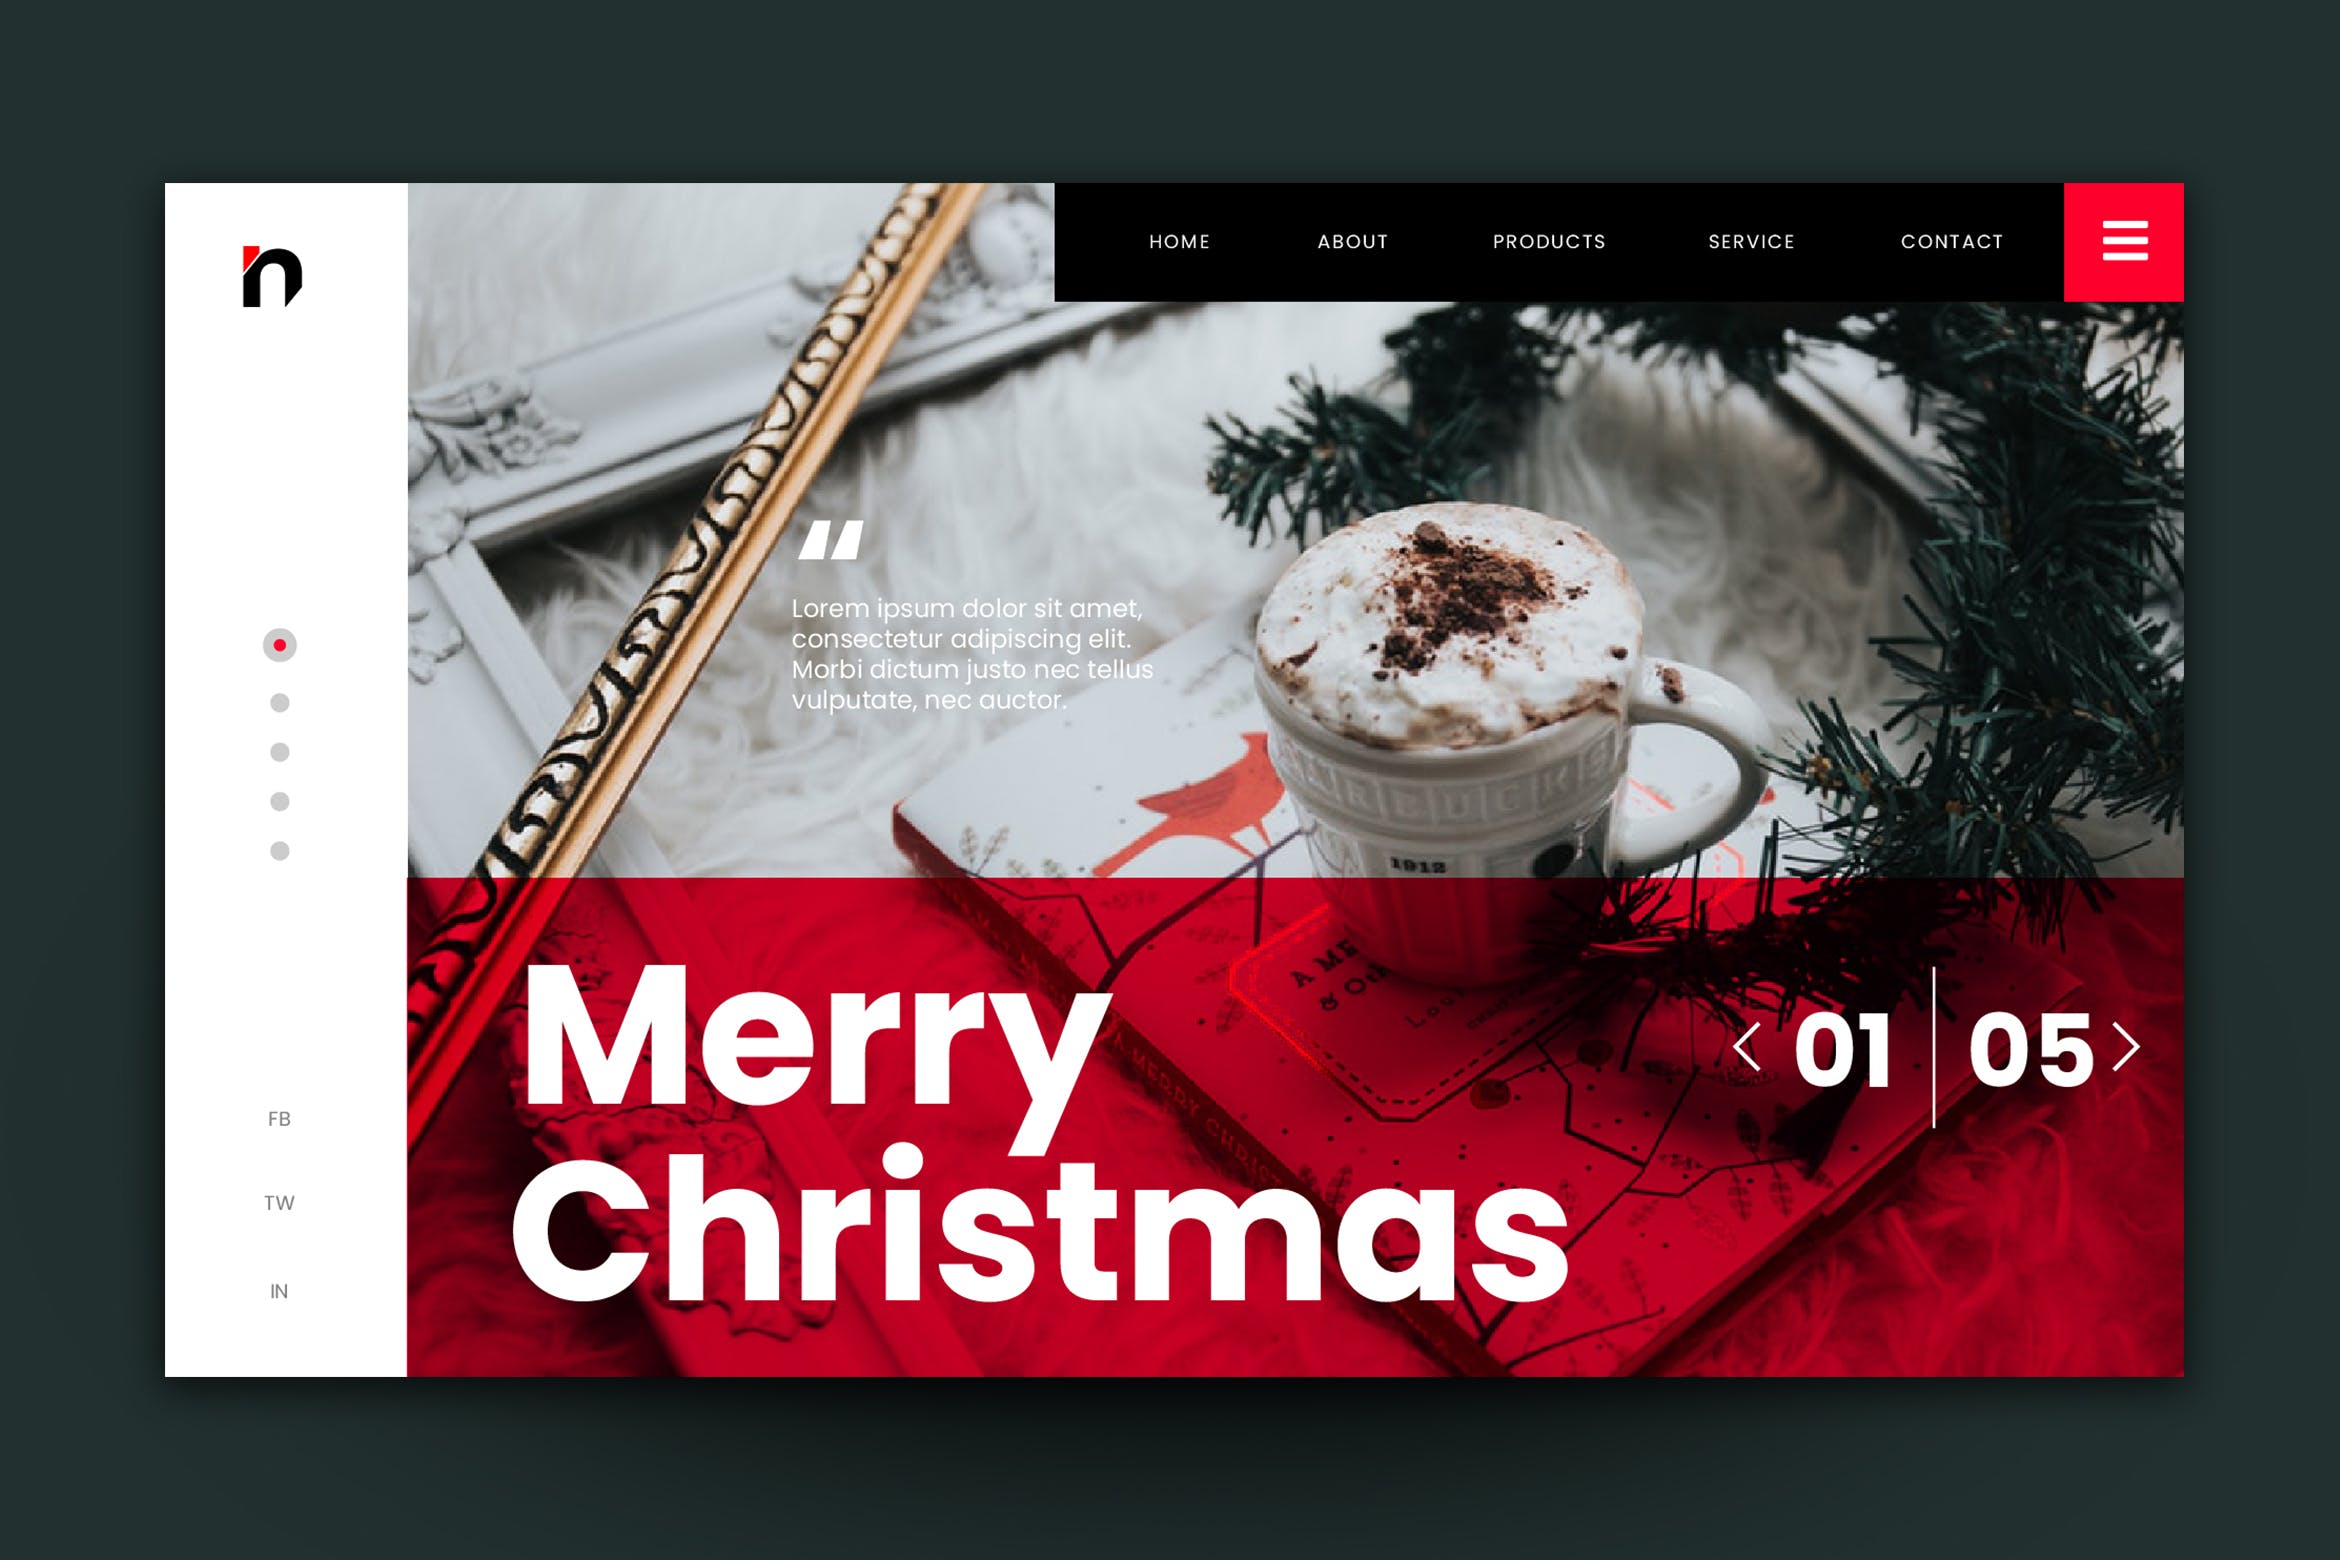 圣诞节主题背景网站着陆页设计AI&PSD模板v1 Merry Christmas Web Landing Page AI and PSD Vol.1插图